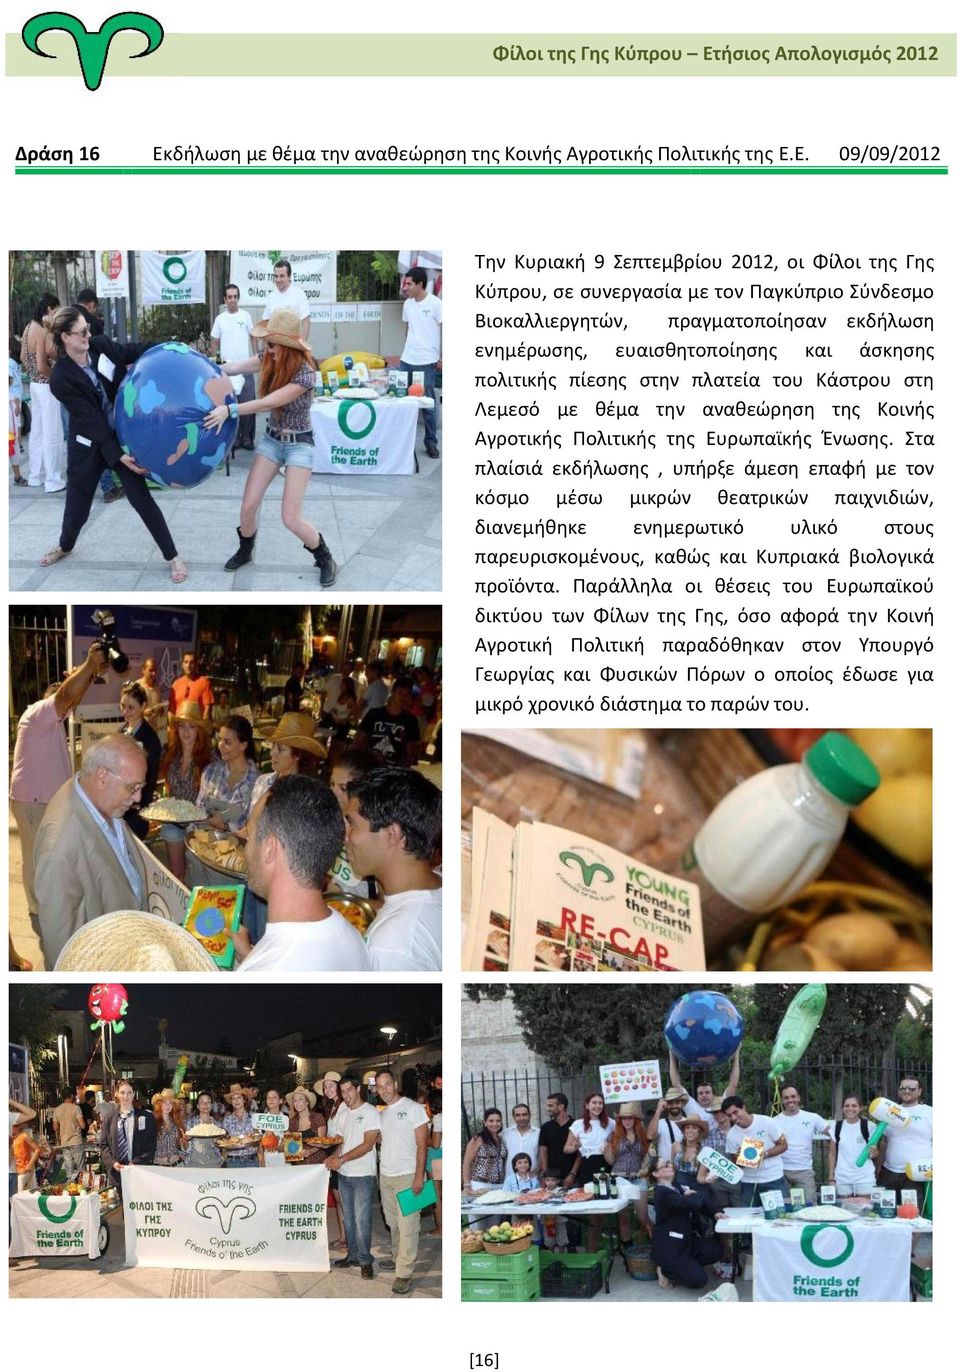 Ε. 09/09/2012 Την Κυριακή 9 Σεπτεμβρίου 2012, οι Φίλοι της Γης Κύπρου, σε συνεργασία με τον Παγκύπριο Σύνδεσμο Βιοκαλλιεργητών, πραγματοποίησαν εκδήλωση ενημέρωσης, ευαισθητοποίησης και άσκησης